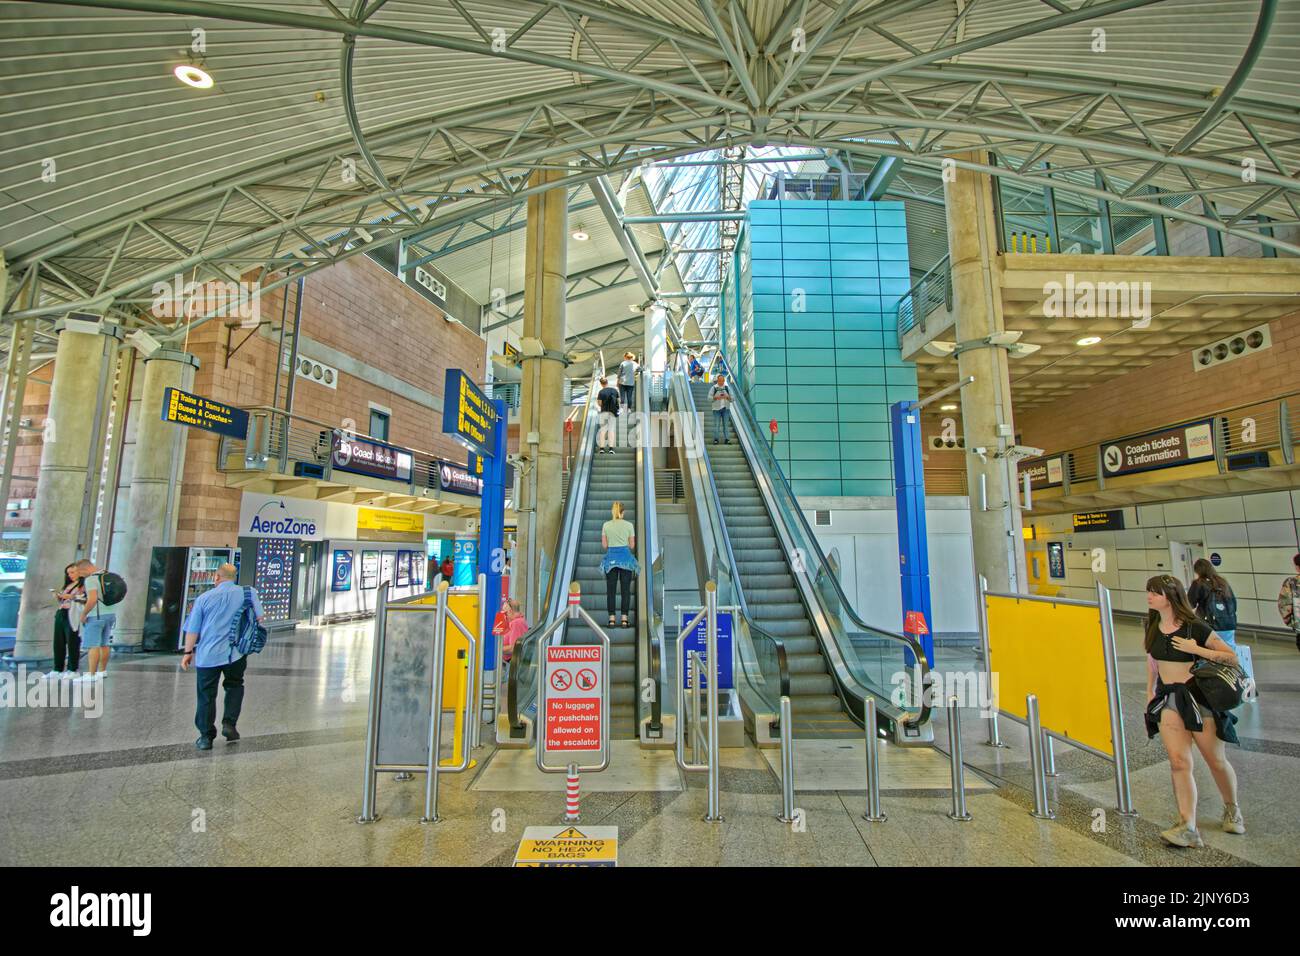 Stazione ferroviaria e Tramway dell'aeroporto di Manchester, Manchester, Inghilterra. Foto Stock